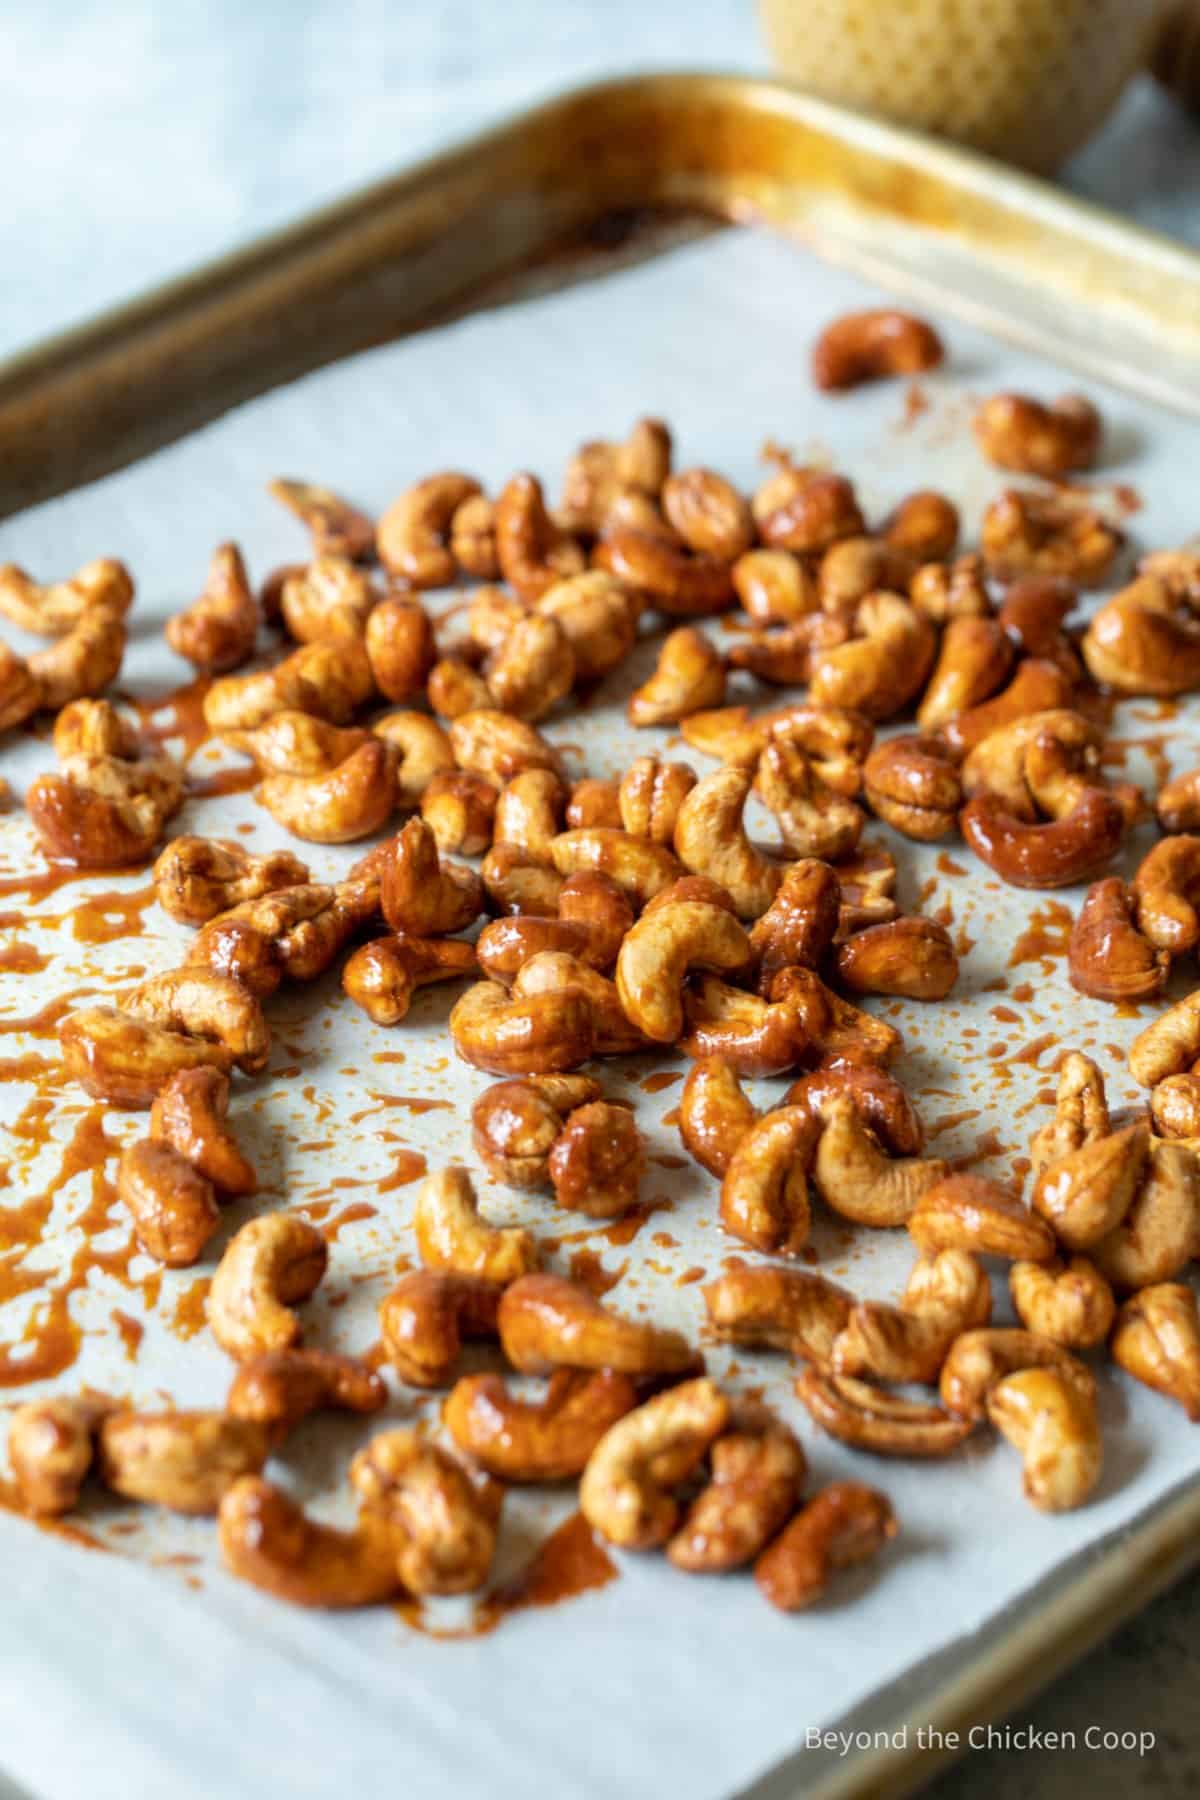 Roasted cashews on a baking sheet.